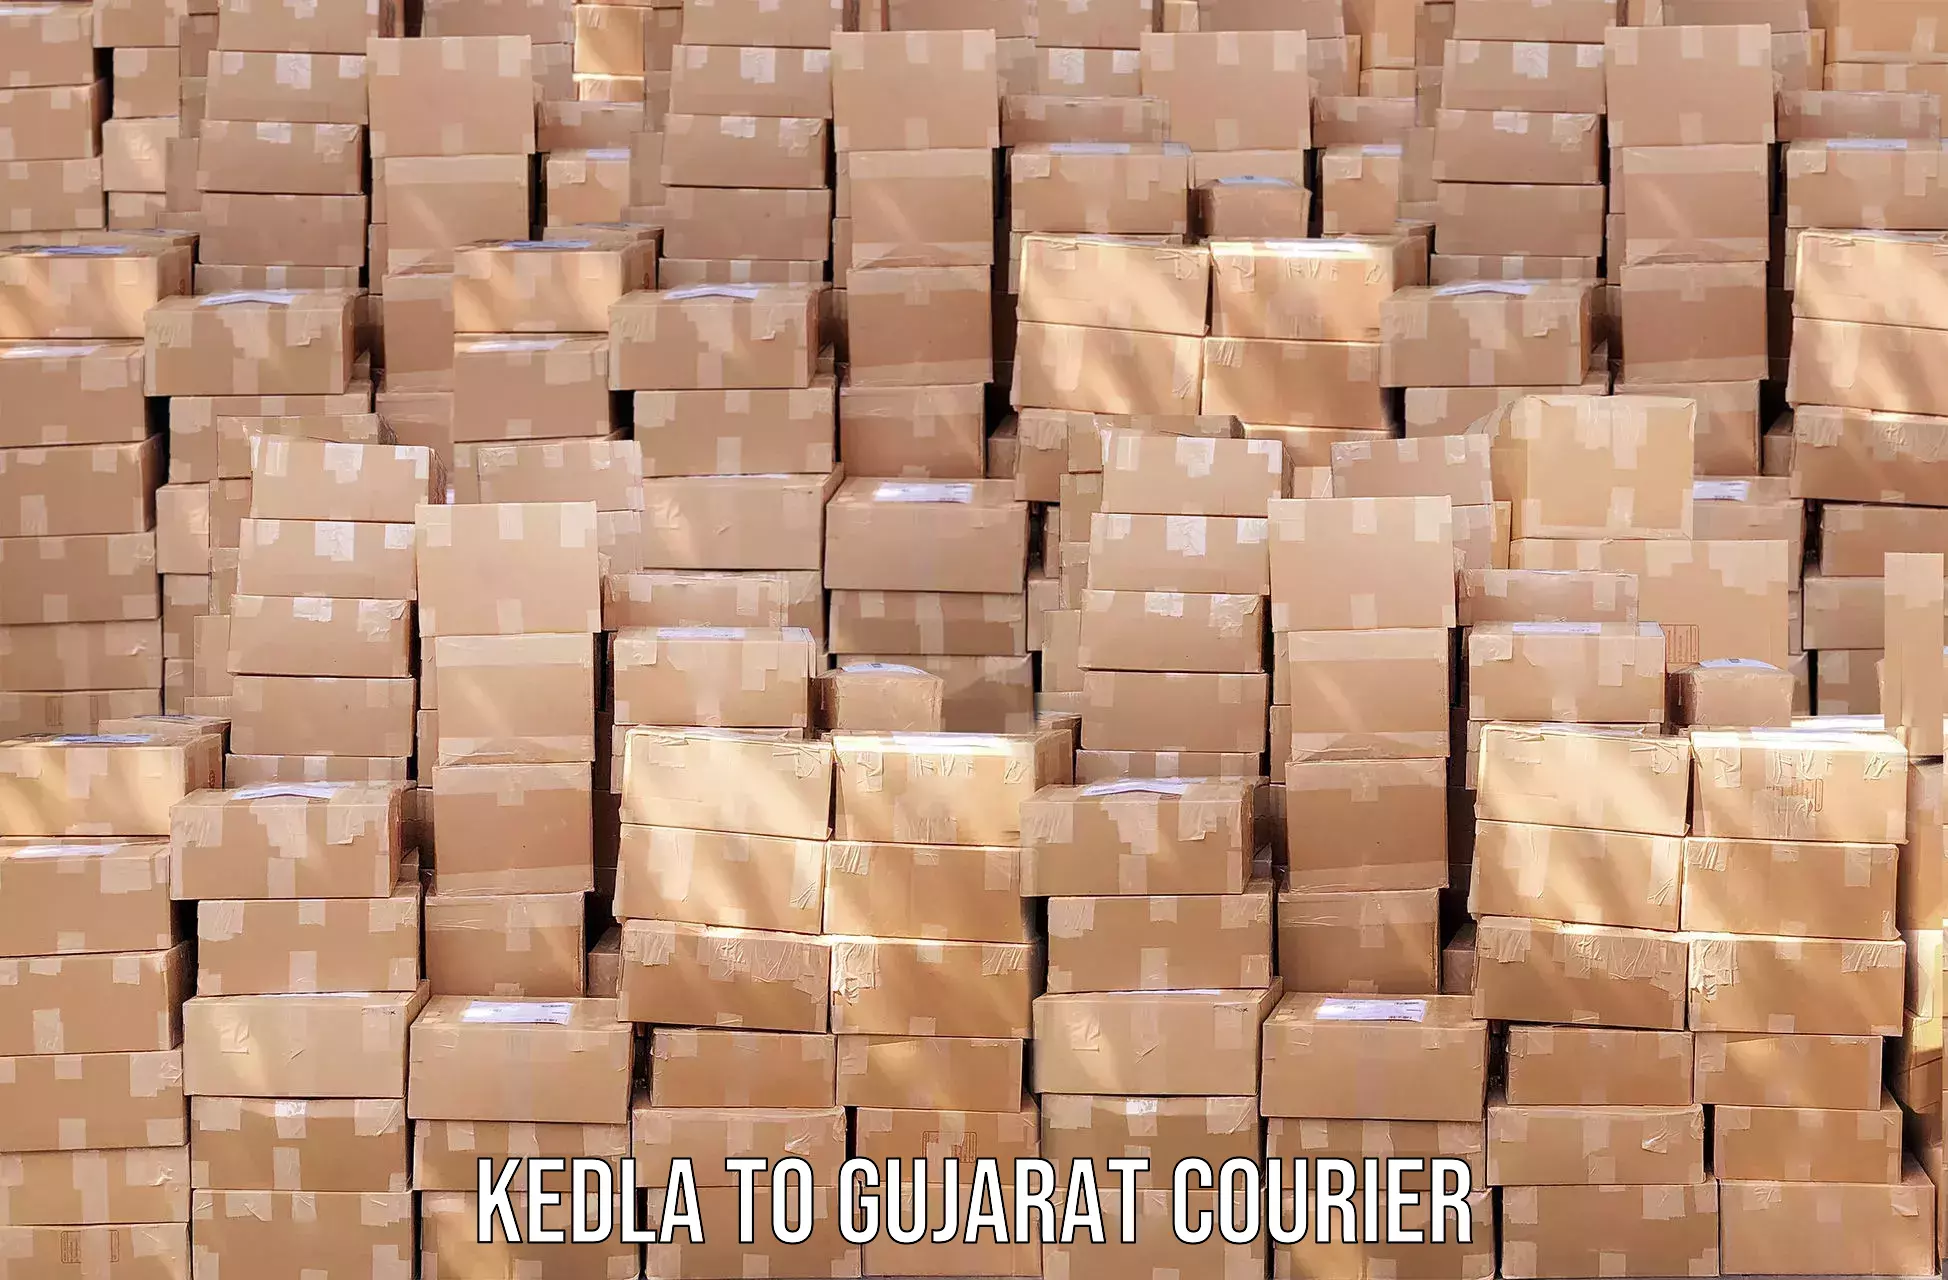 Pharmaceutical courier Kedla to Prantij